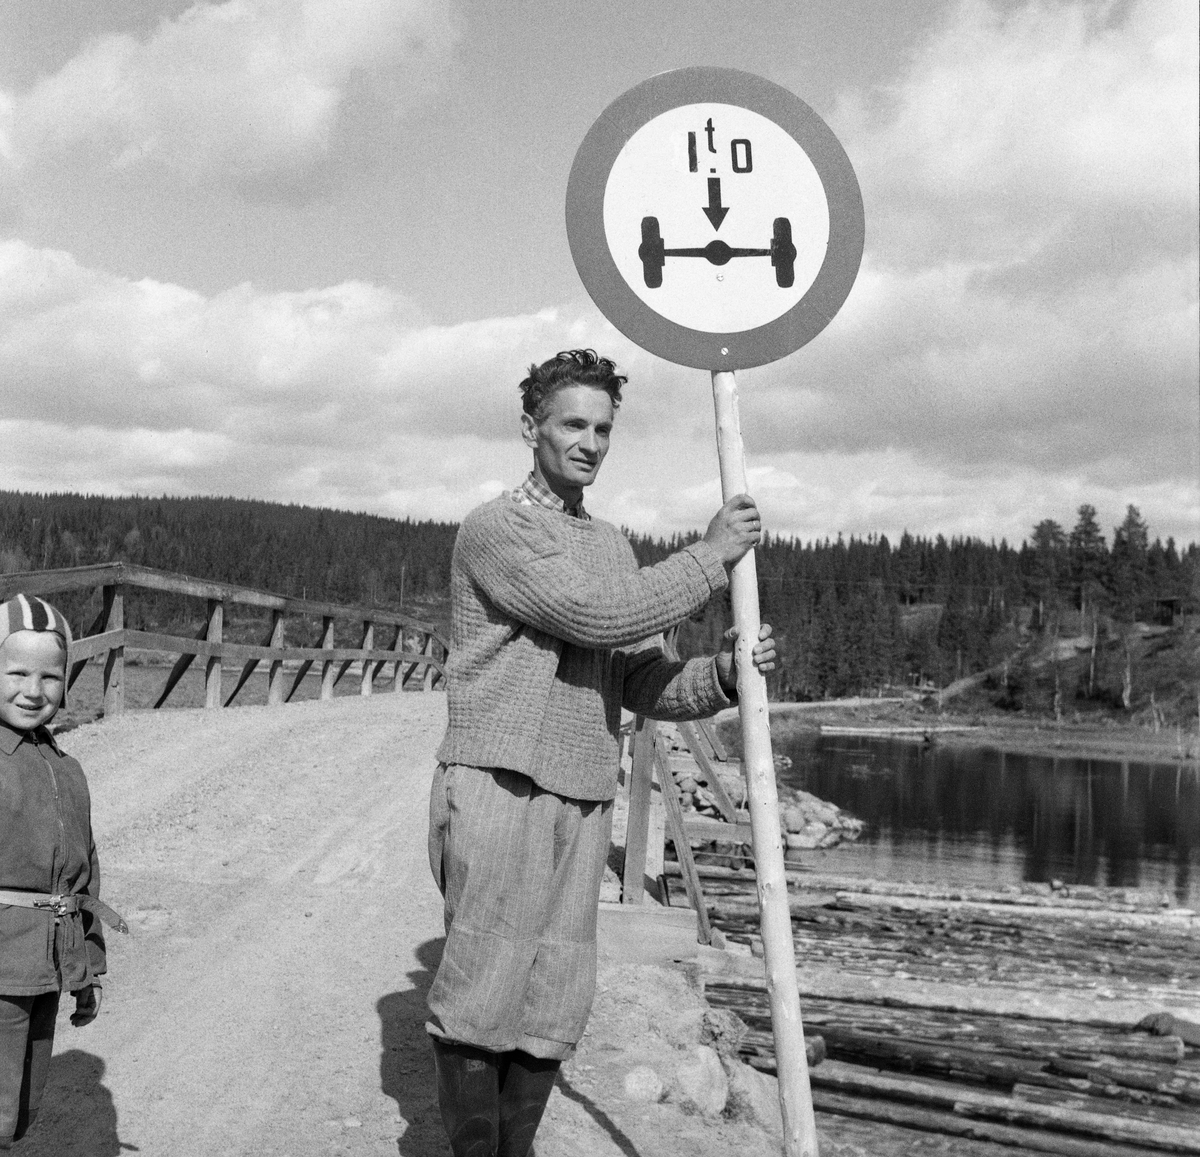 Mann og gutt ved ei veibro, trolig i sørenden av Osensøen i Trysil, Hedmark. Mannen viser et trafikkskilt, høyest tillatt akseltrykk ved passering av brua var ett tonn.